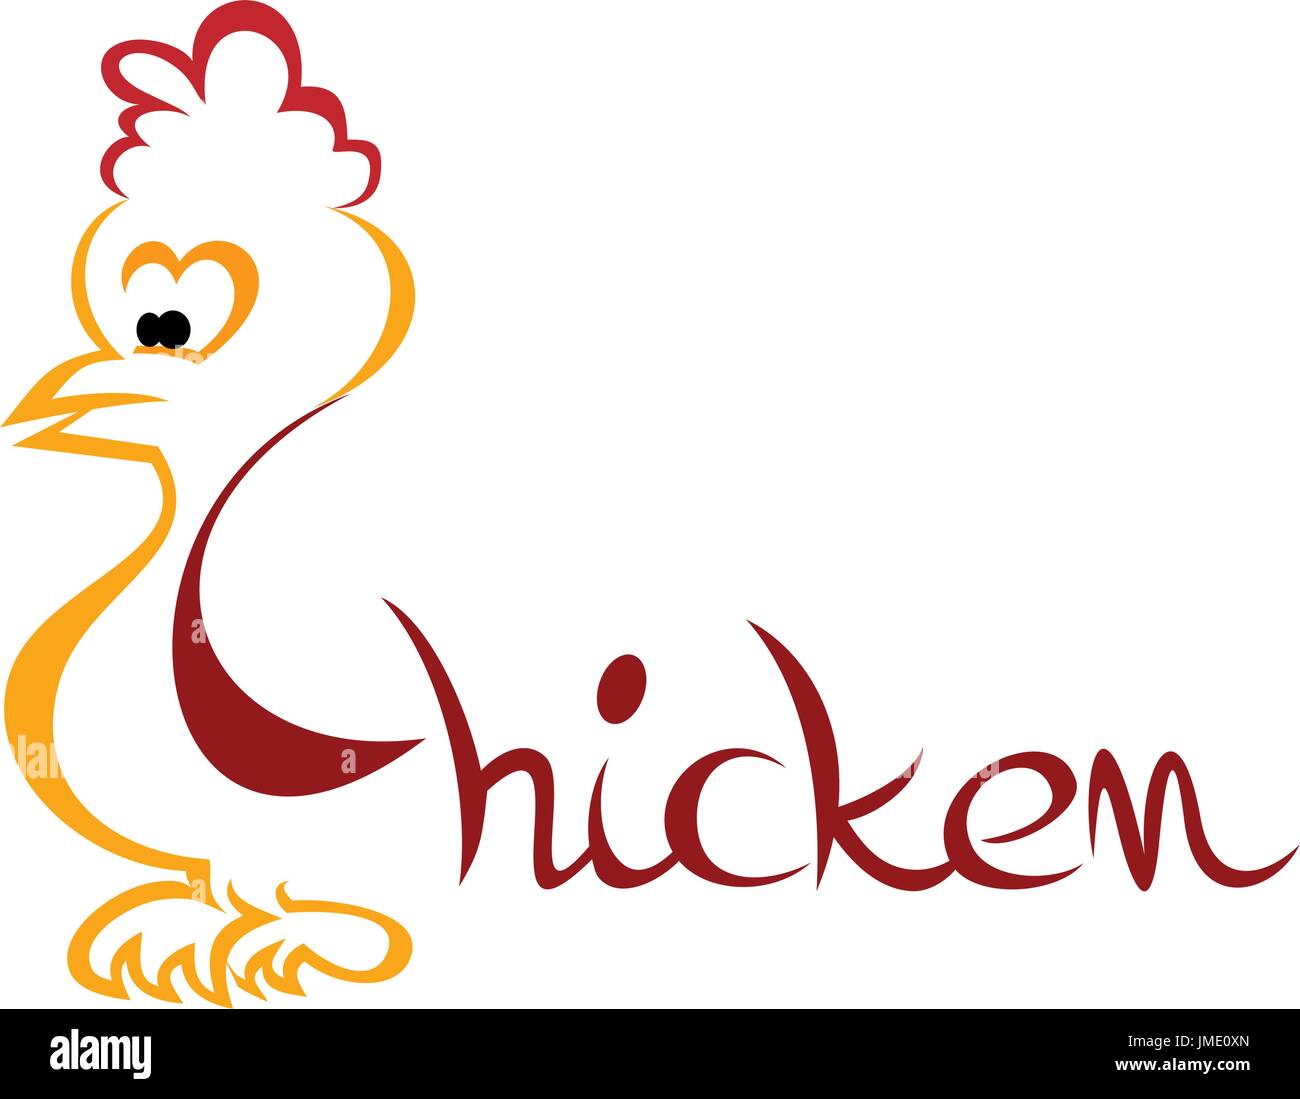 Chicken symbol Stock Vector